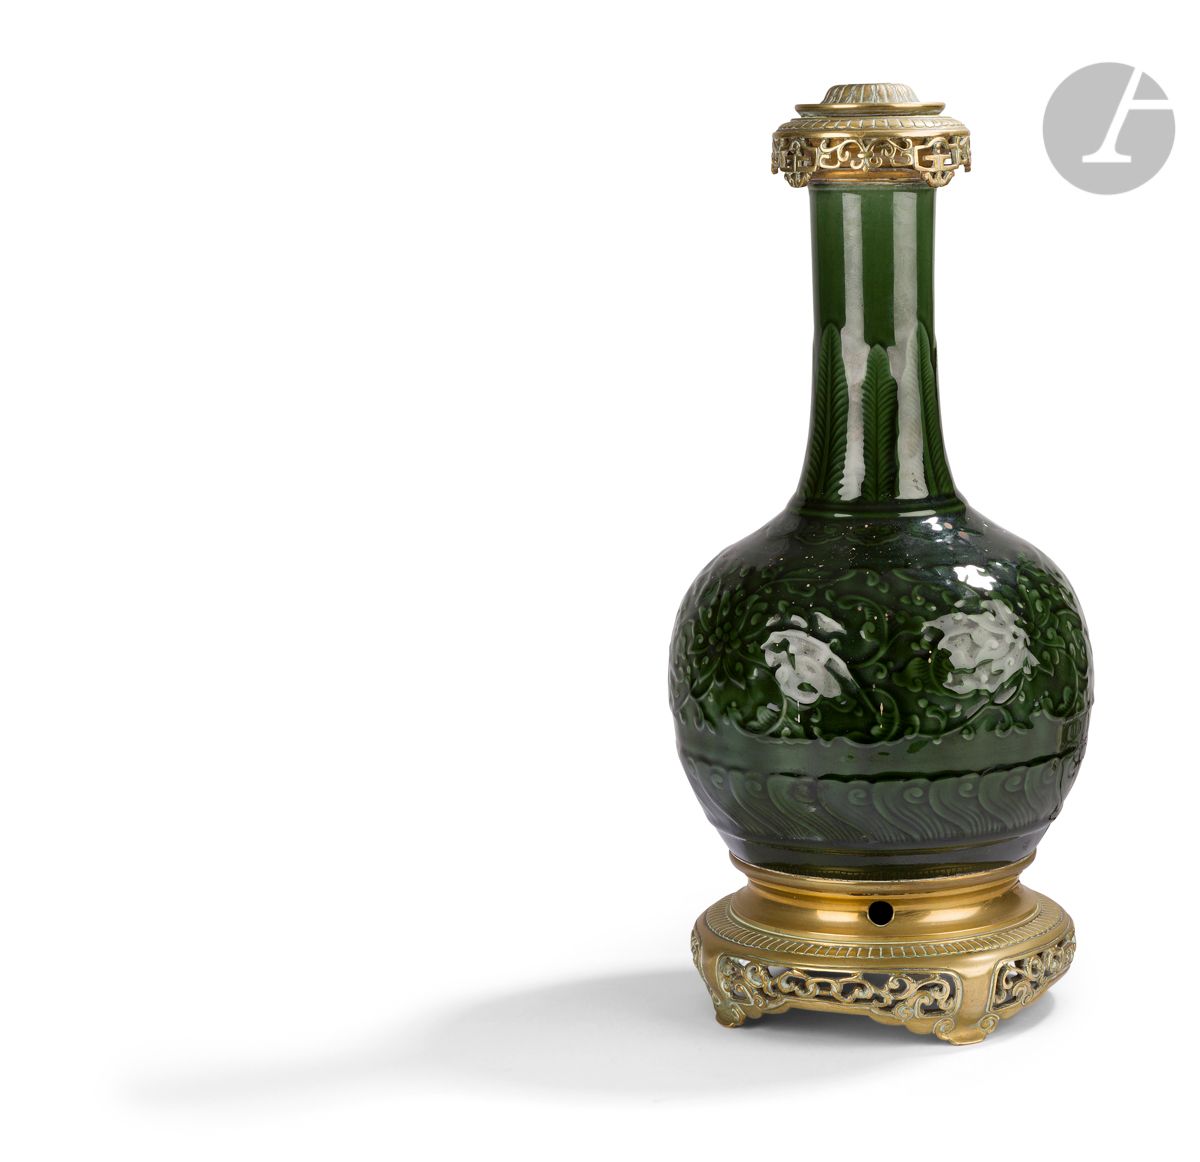 Null Théodore Deck (attribuito a)
Un vaso di terracotta a forma di balaustro con&hellip;